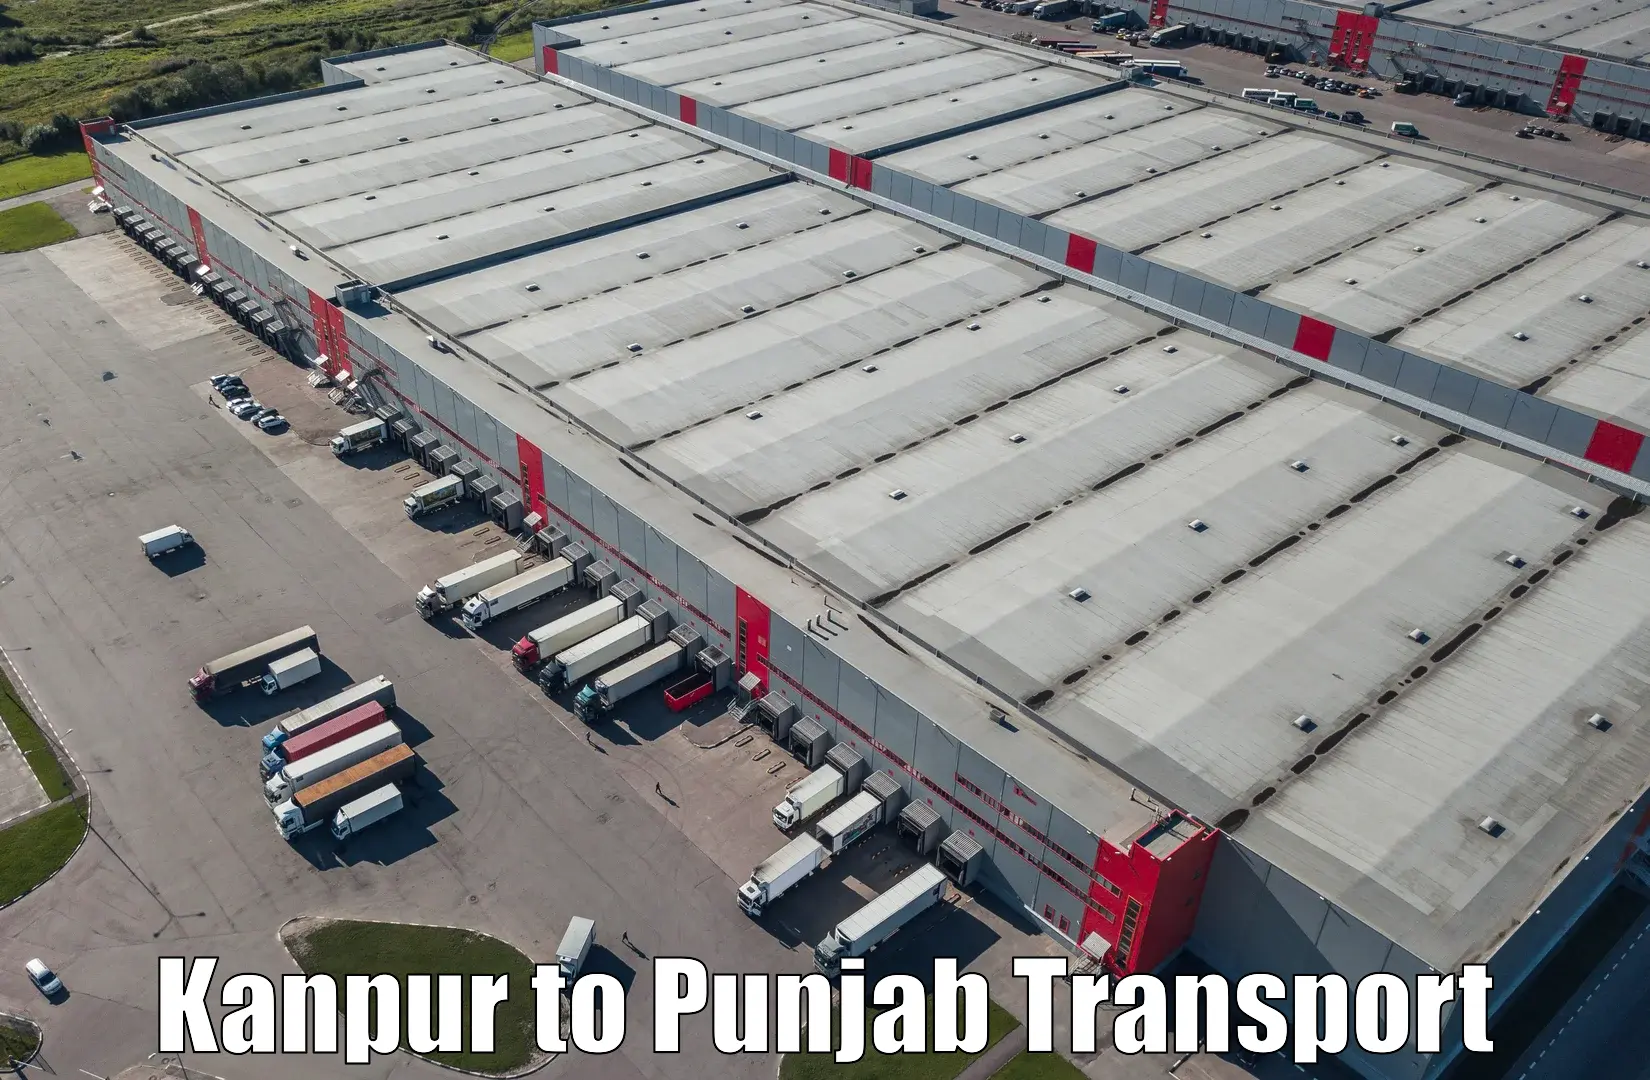 Transport services Kanpur to Jalandhar